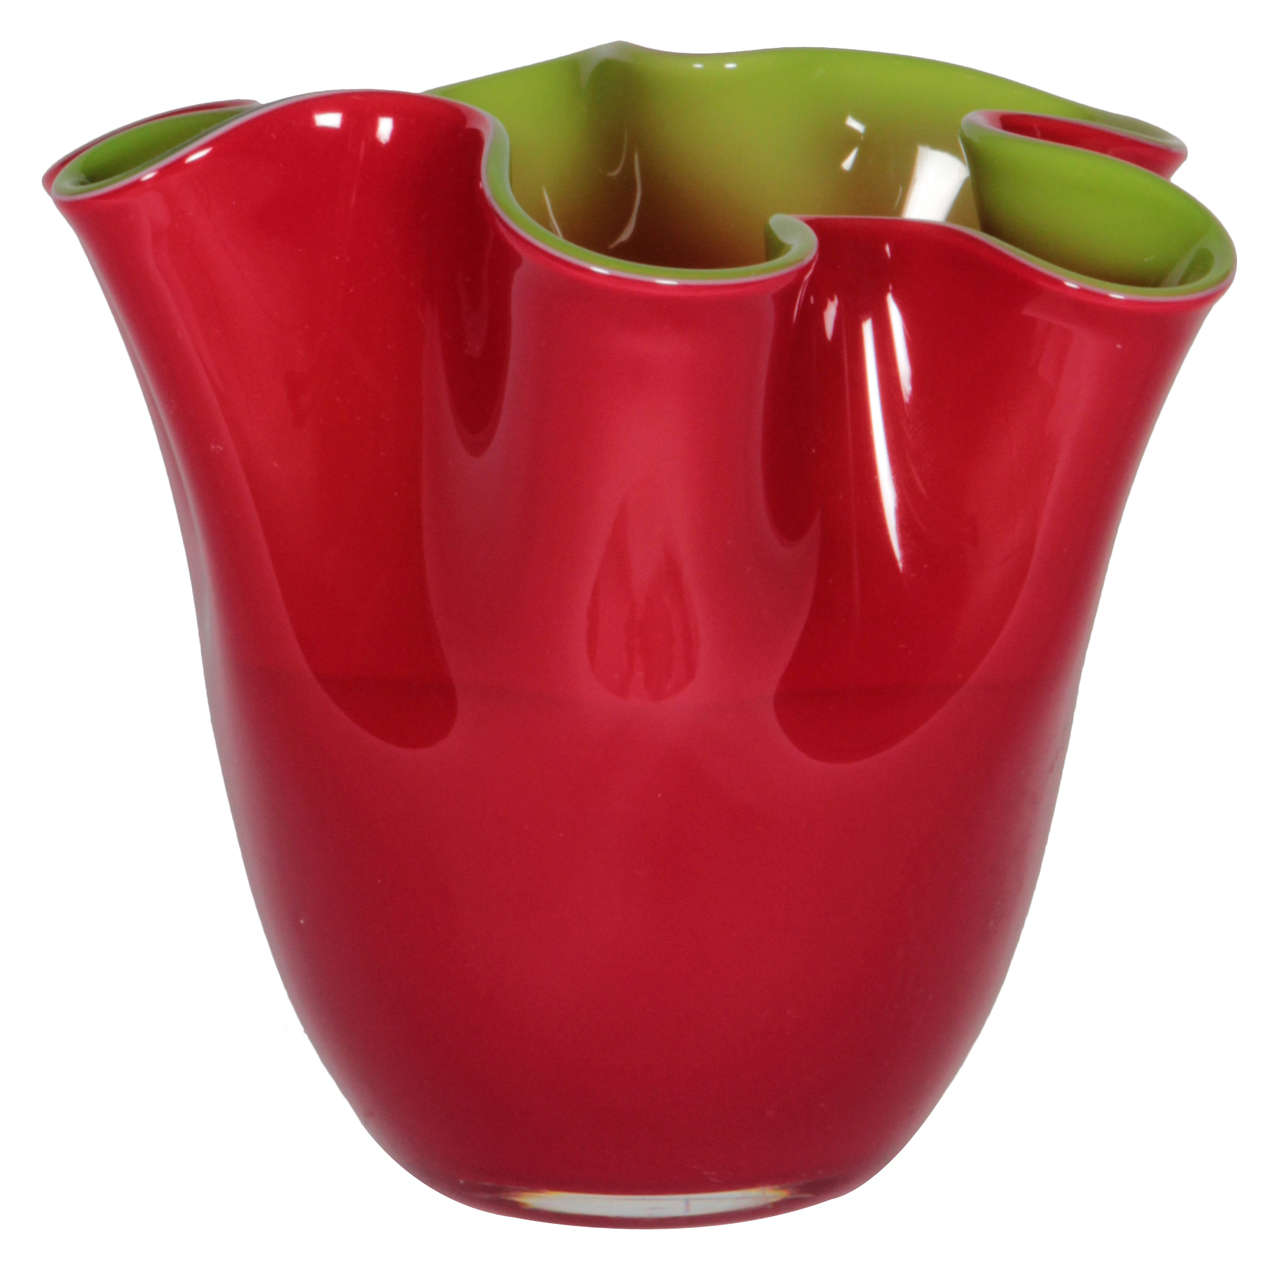 Italienische rote und grüne Vase